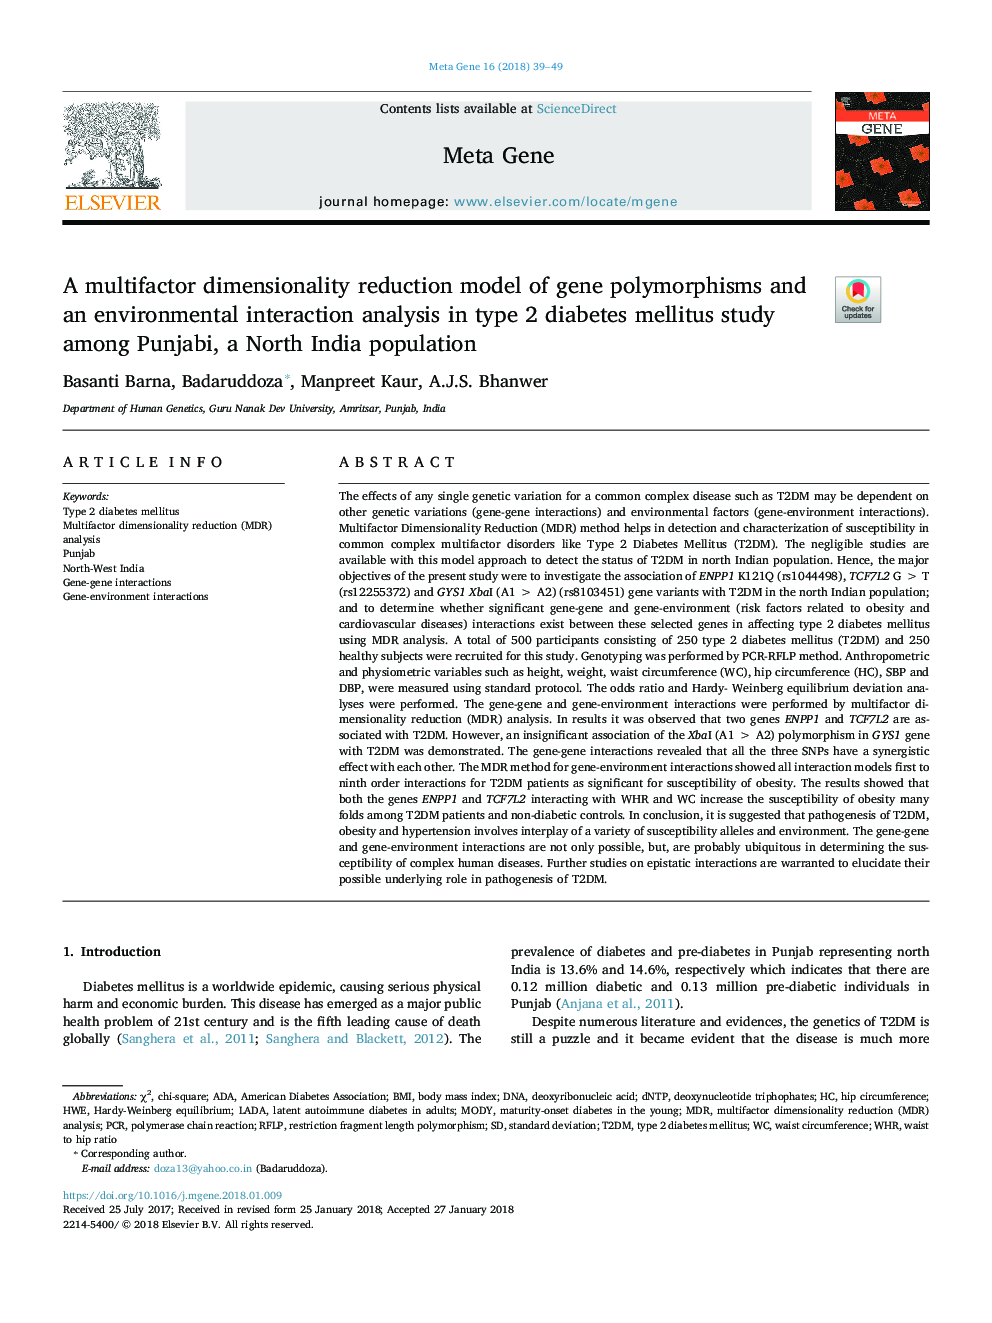 یک مدل کاهش چند بعدی فاکتور پلمورفیسم ژنی و یک تجزیه و تحلیل متقابل محیطی در مطالعه دیابت نوع 2 در پنجاب، یک جمعیت شمال هند 